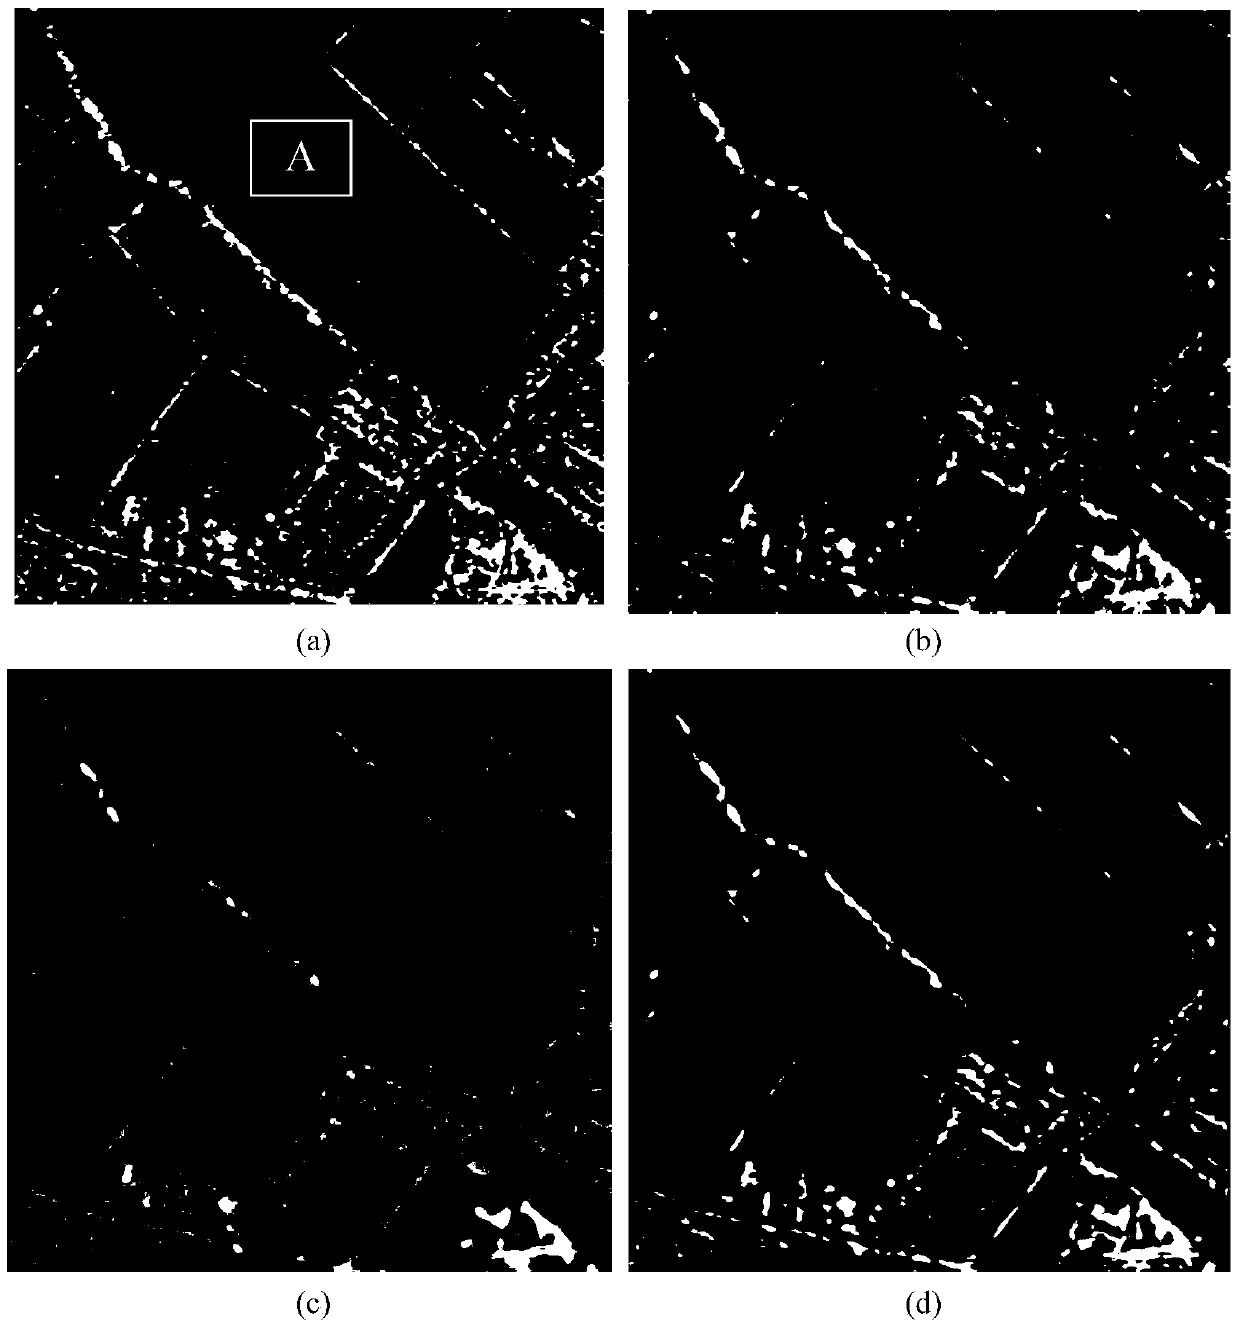 SAR image speckle reduction method based on directional wave domain HMT model